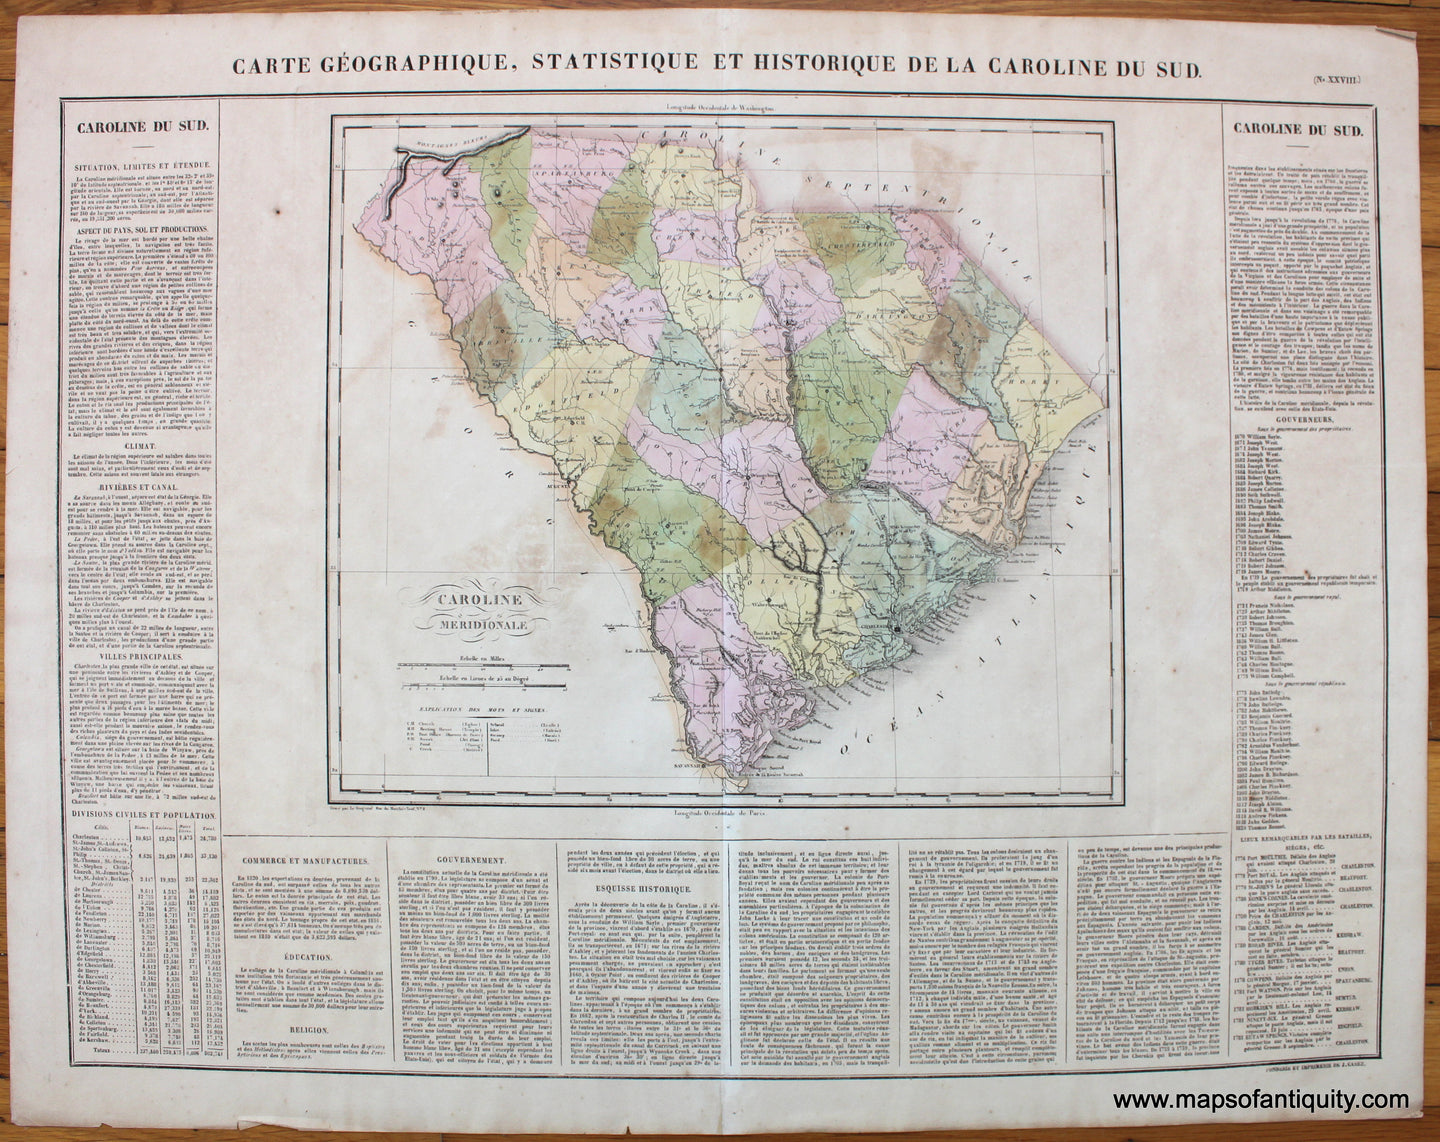 Carte-Geographique-Statistique-et-Historique-de-la-Caroline-du-Sud.-Buchon-1825-South-Carolina-Antique-Map-1820s-1800s-19th-century